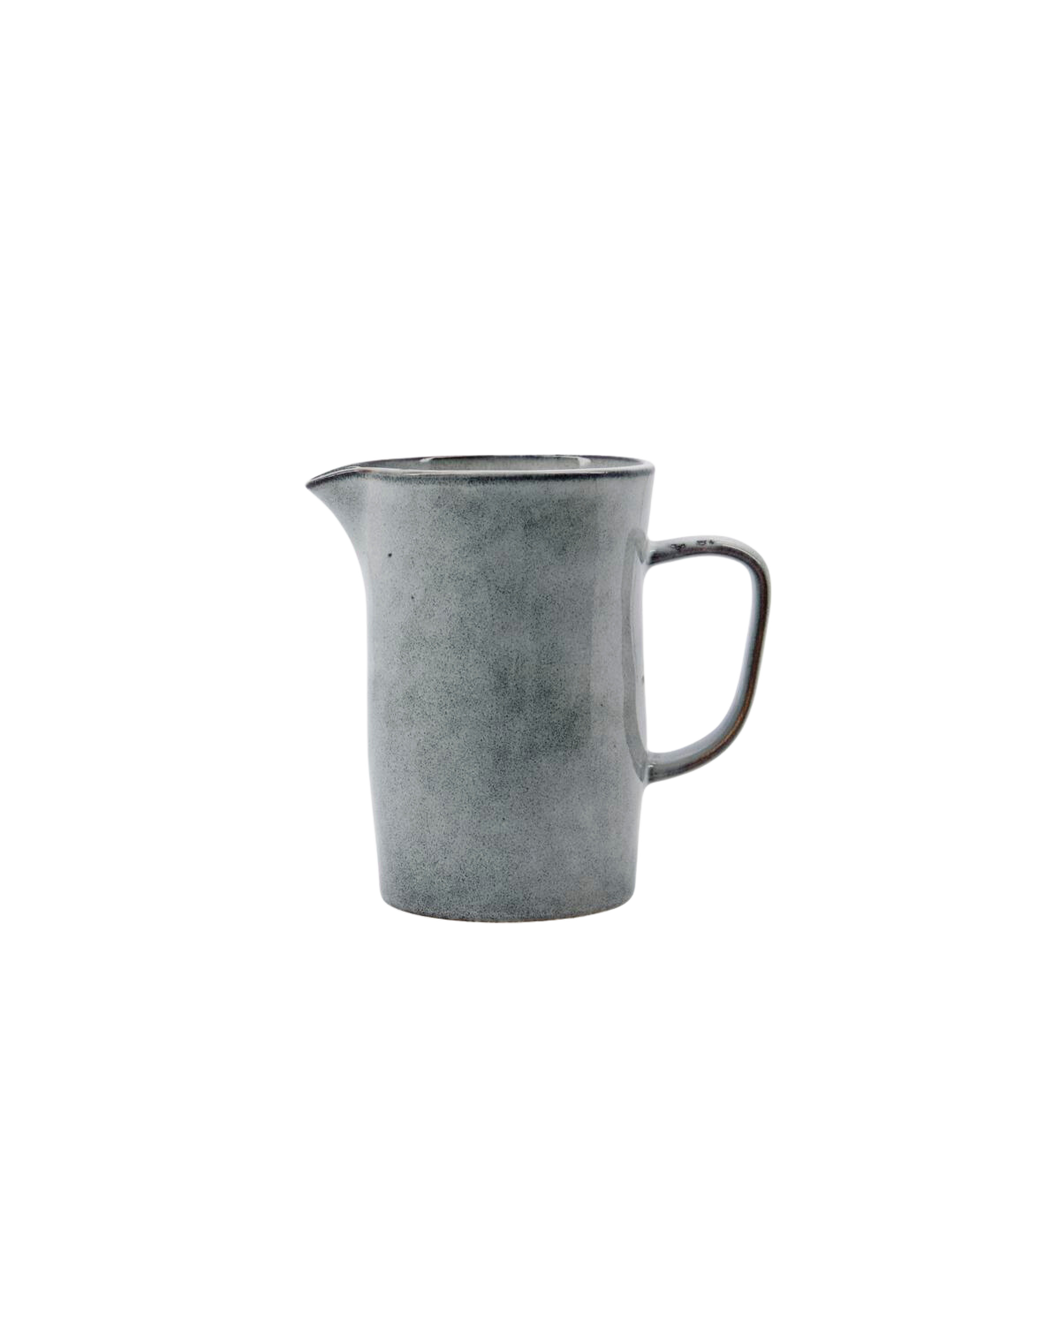 Grey/blue simple rustic jug